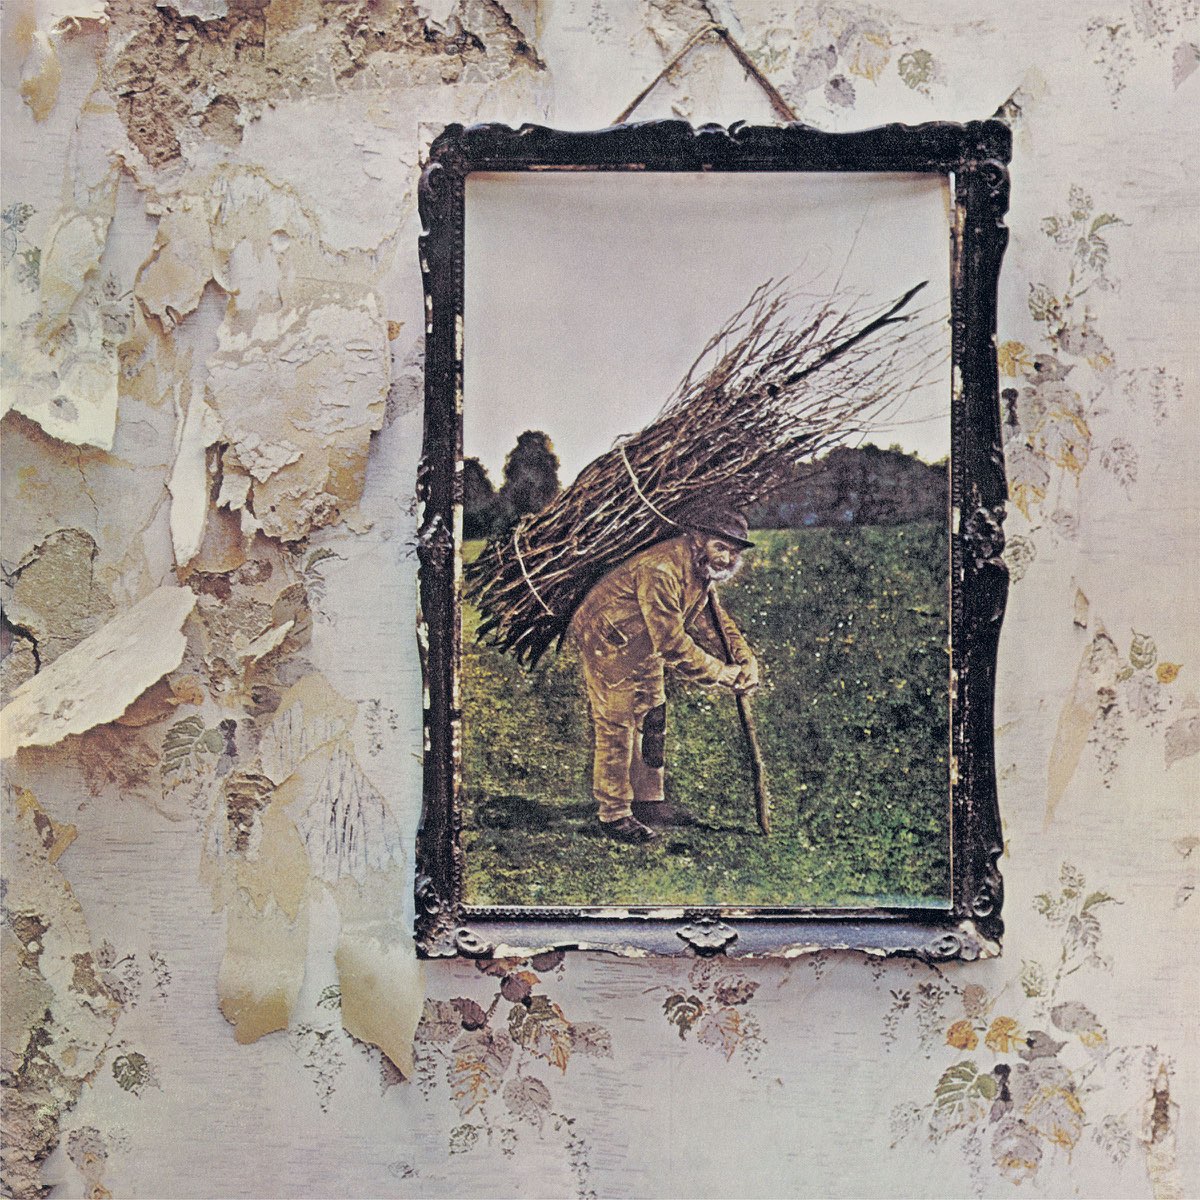 Led Zeppelin IV (Remastered) by Led Zeppelin on Apple Music